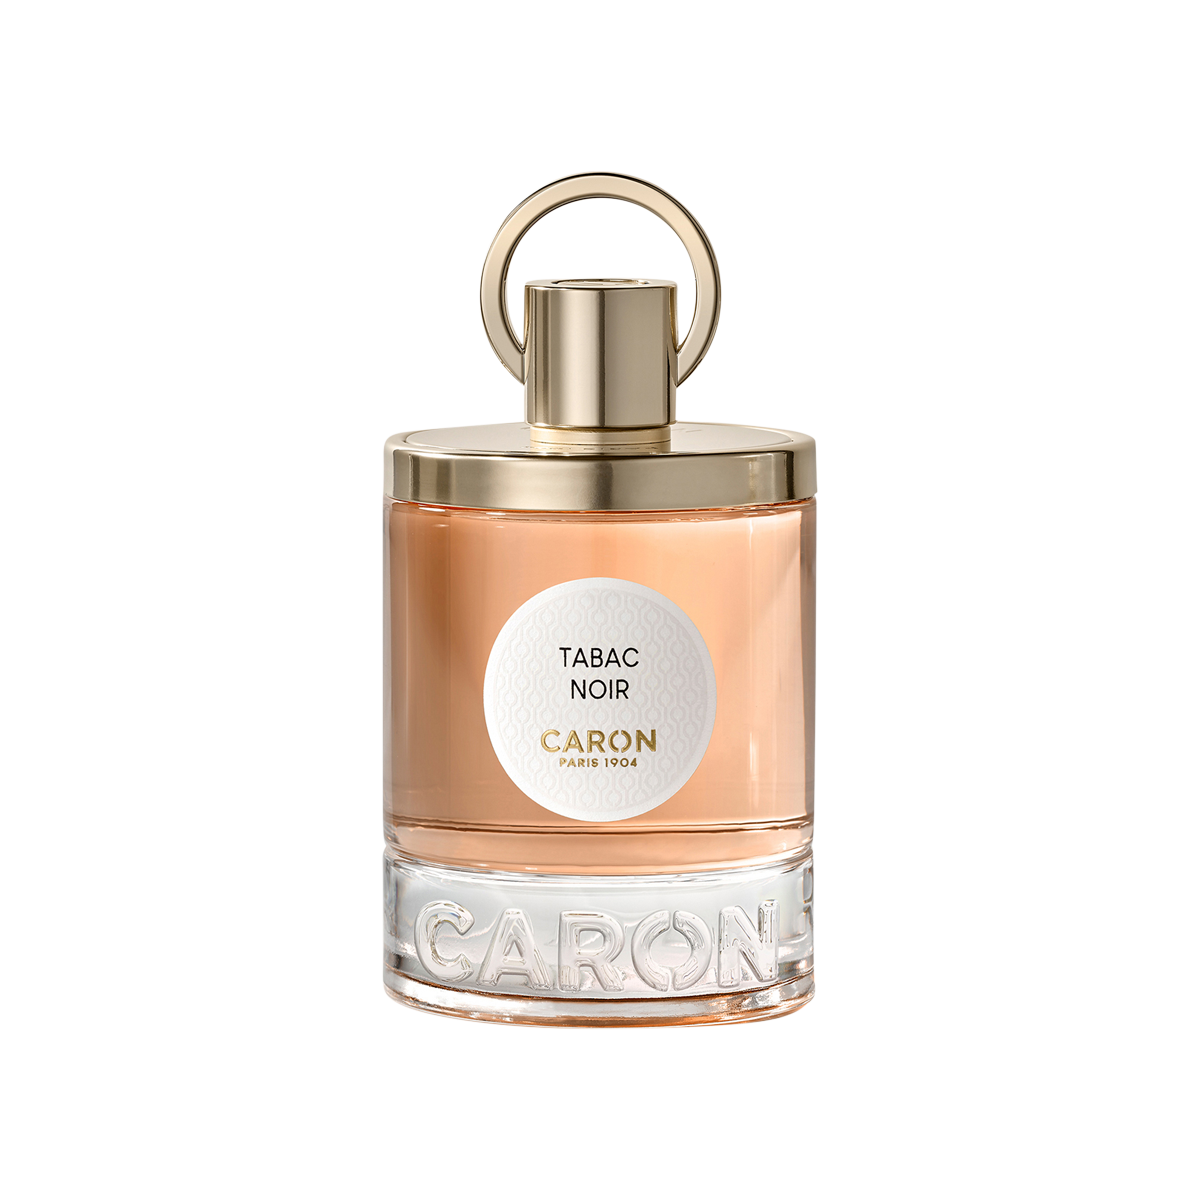 Caron - Tabac Noir Eau de Parfum